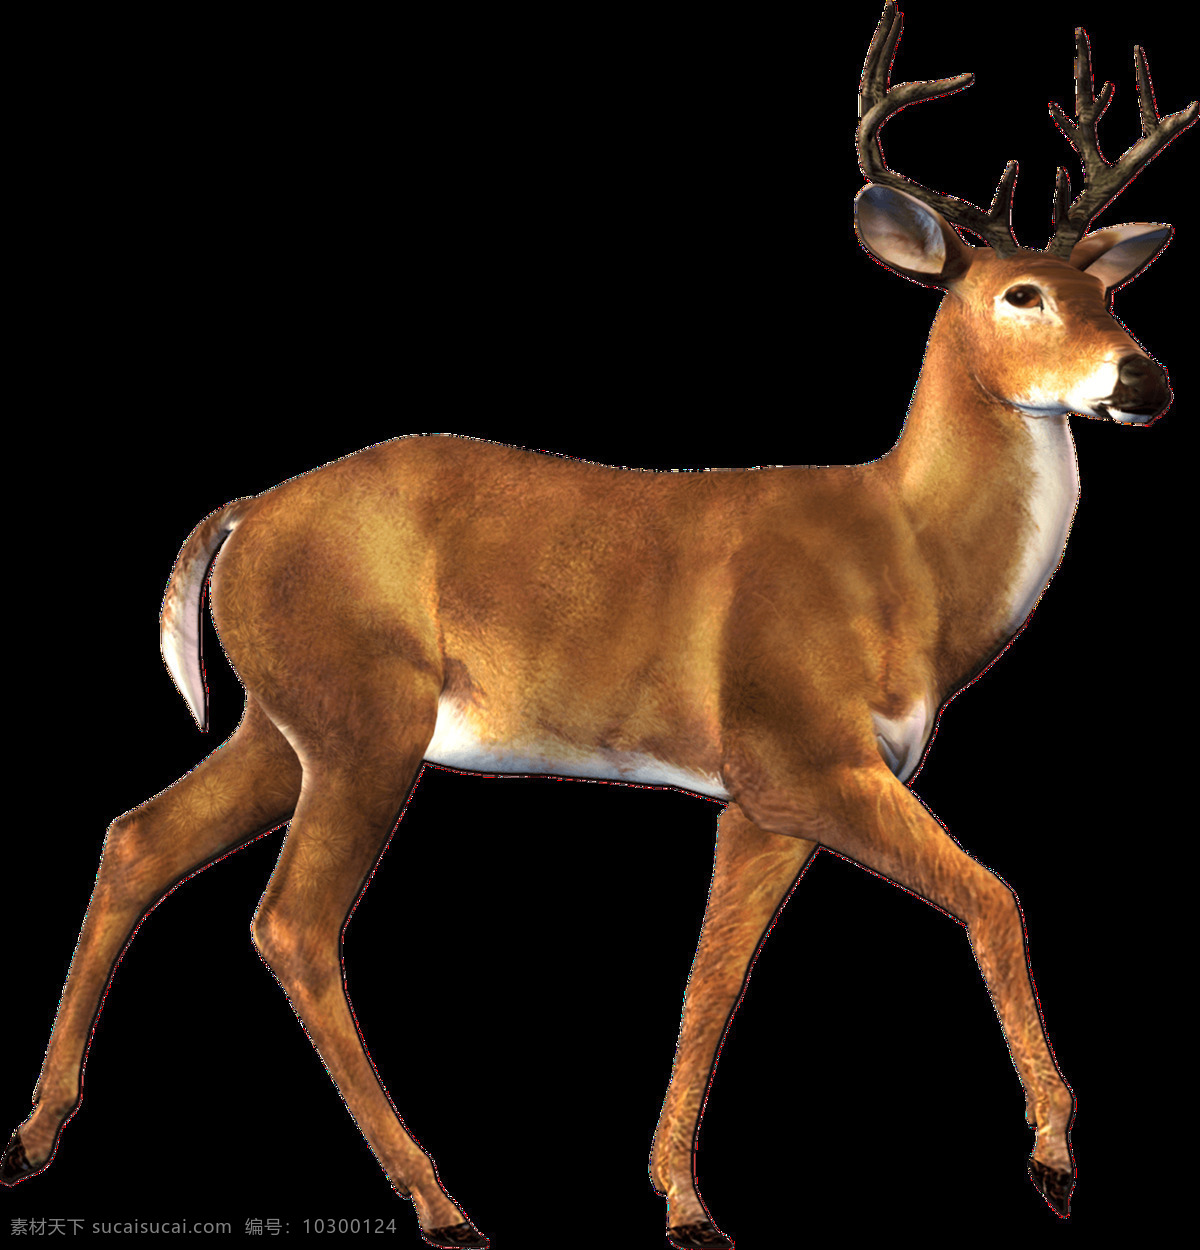 梅花鹿图片 驯鹿 驼鹿 麋鹿 大角鹿 鹿 png图 透明图 免扣图 透明背景 透明底 抠图 生物世界 野生动物